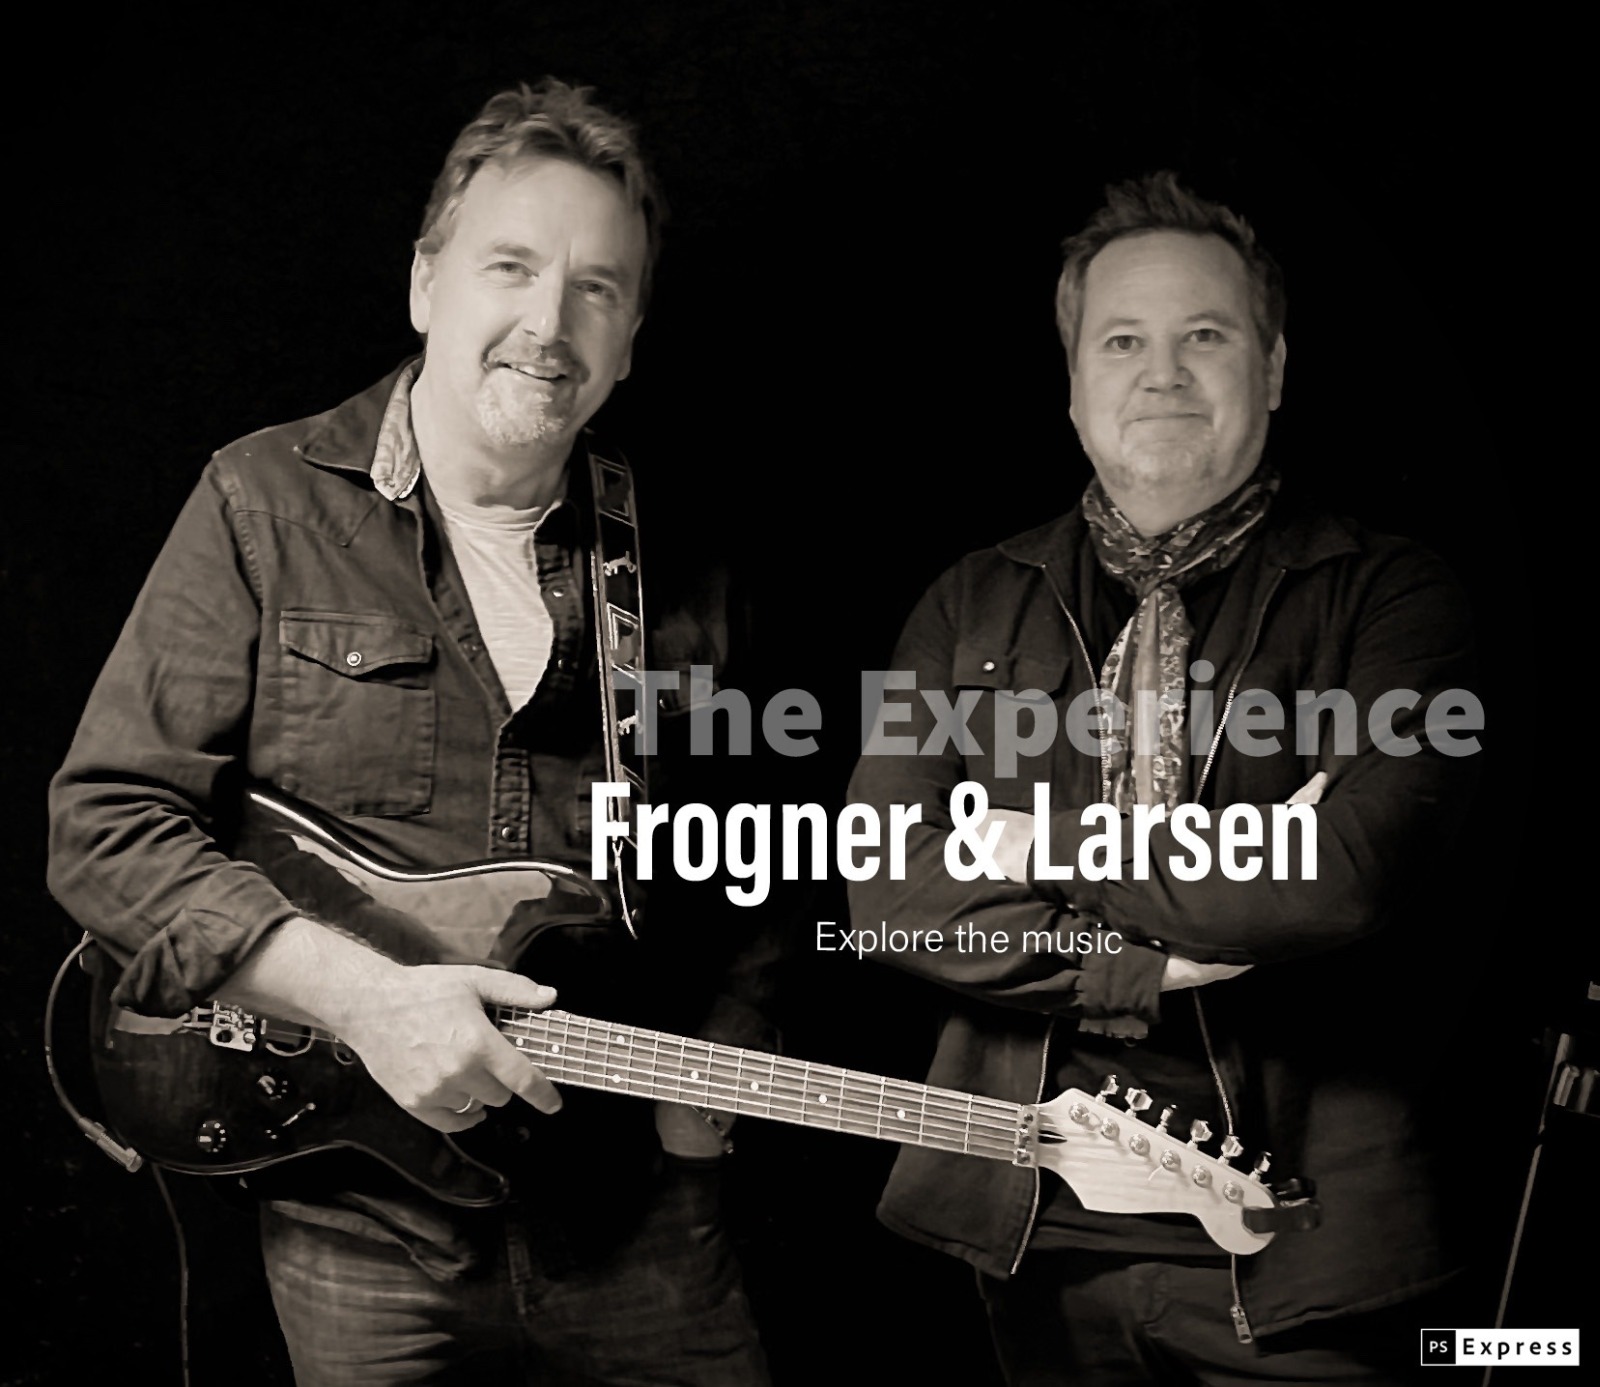 Frogner & Larsen